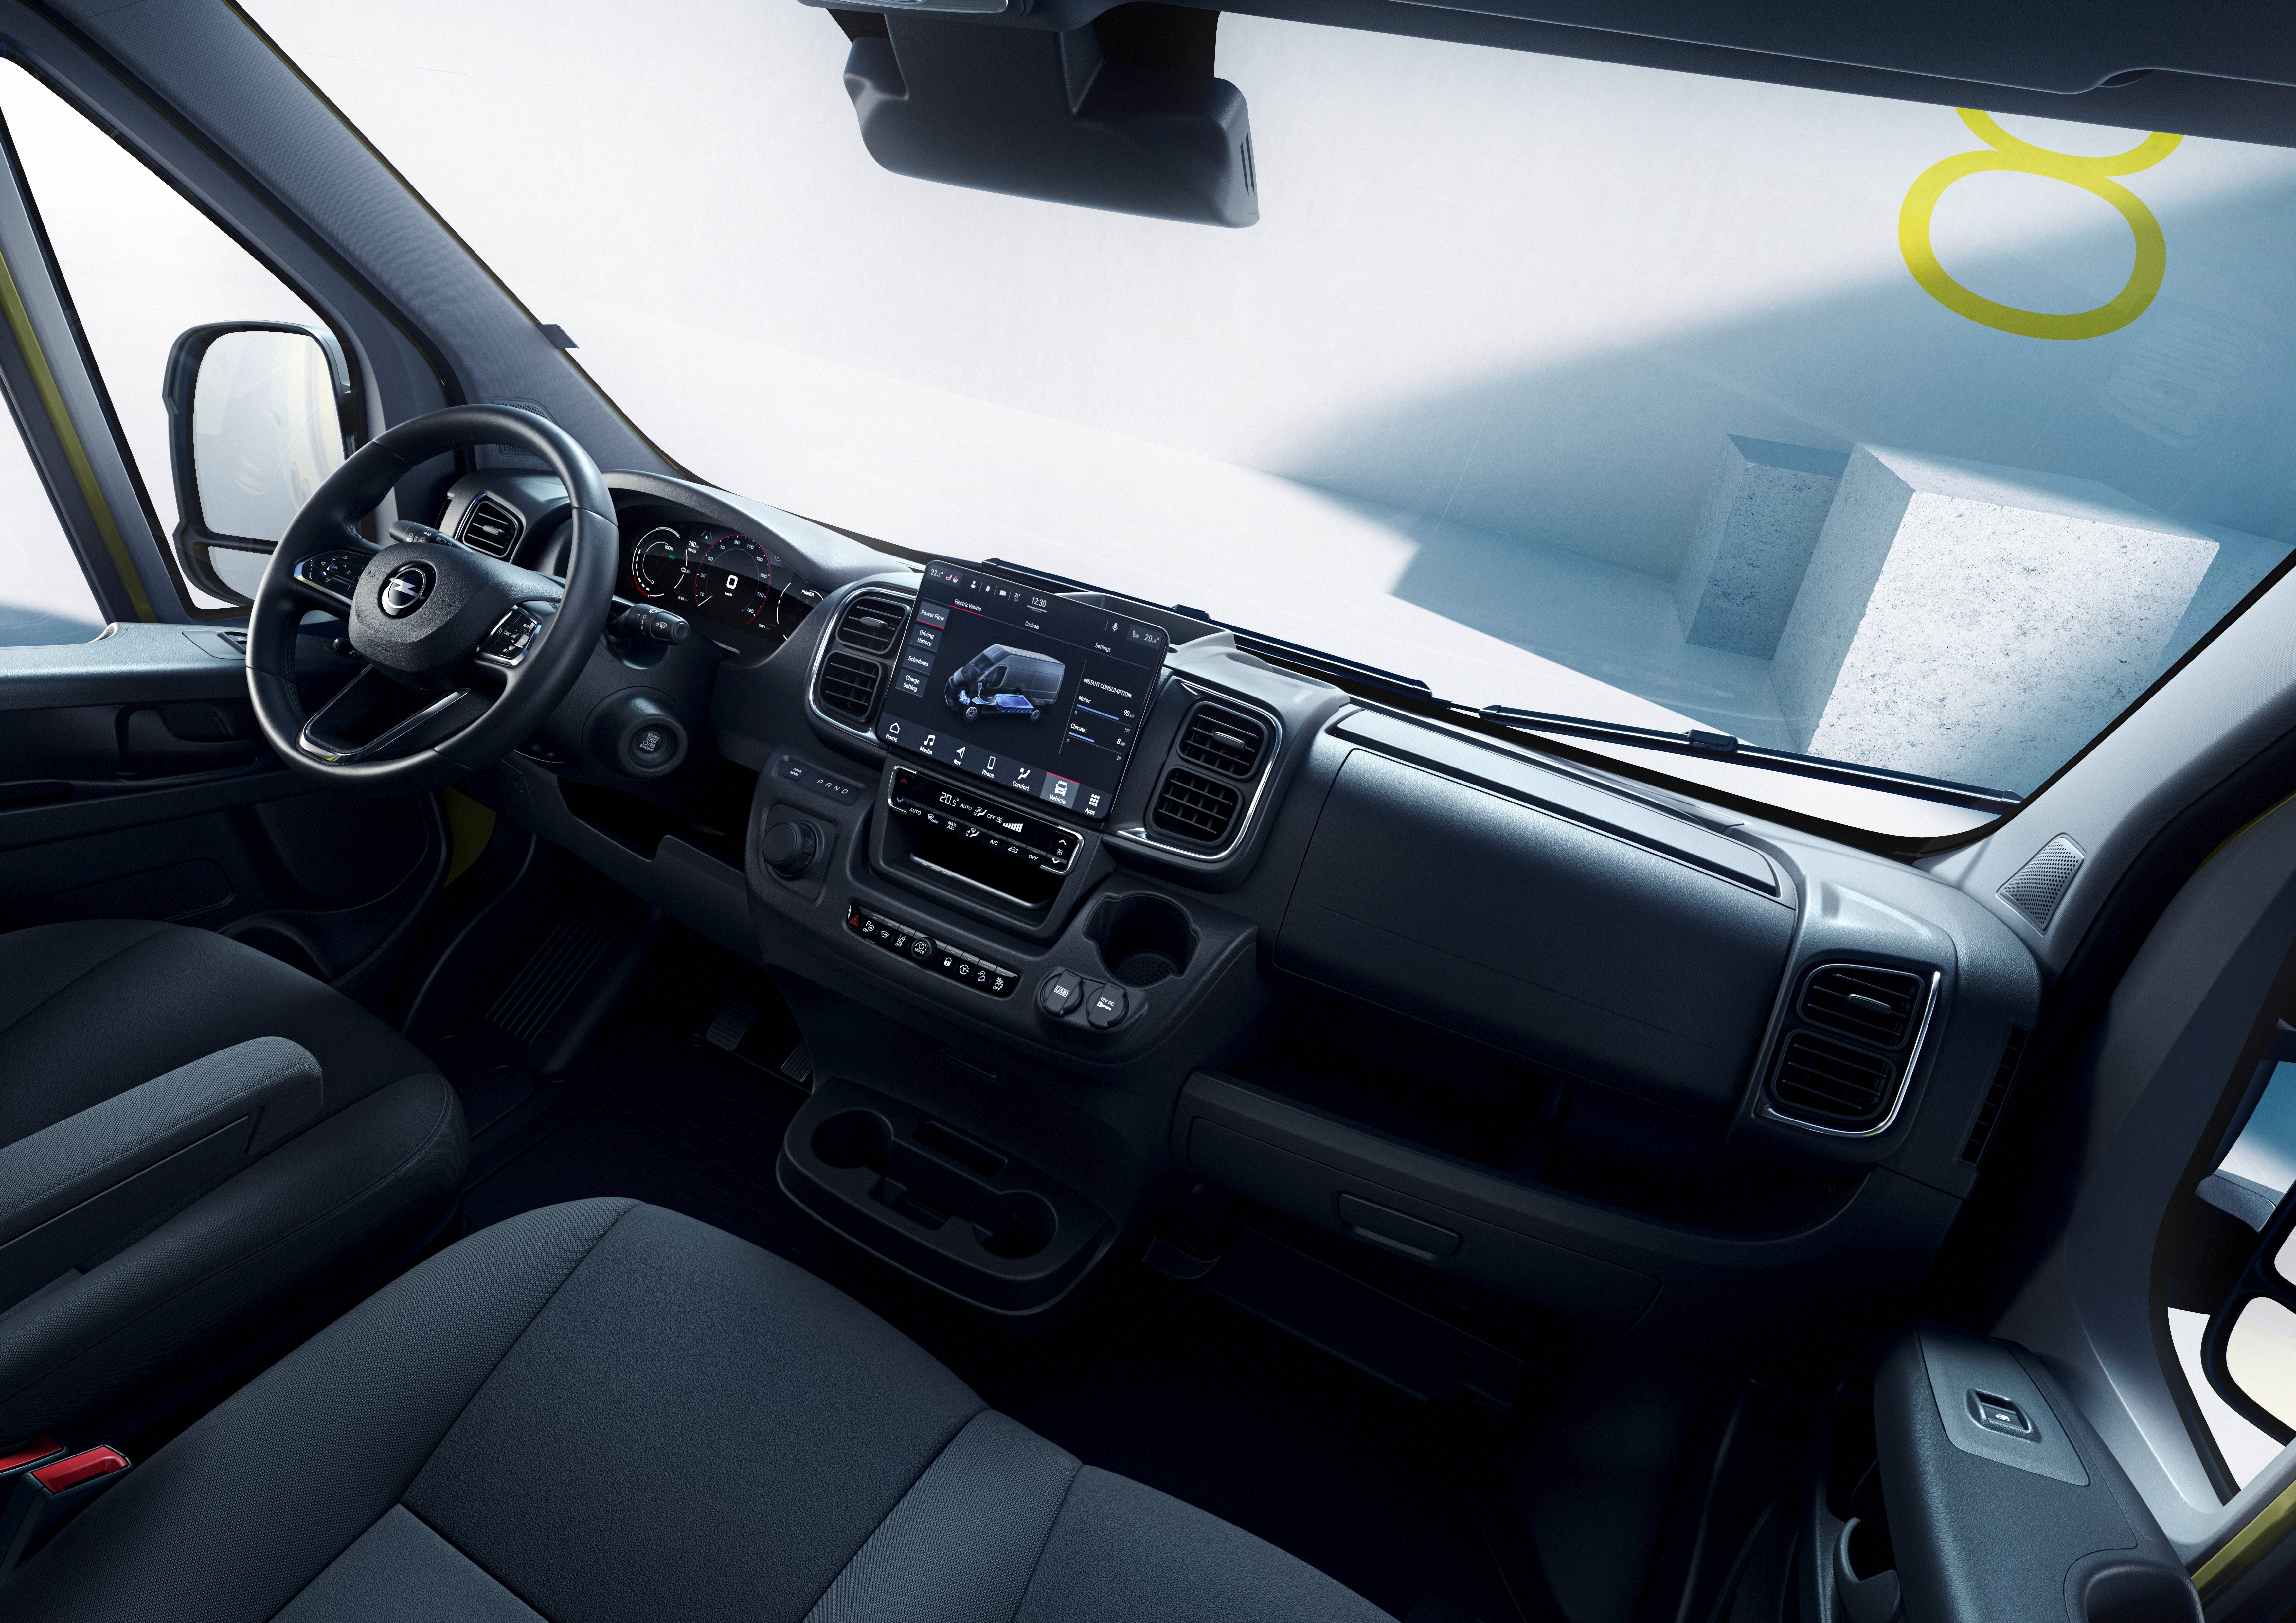 Elektrický, inovativní, efektivní: Nový Opel Movano nastavuje měřítka svému segmentu